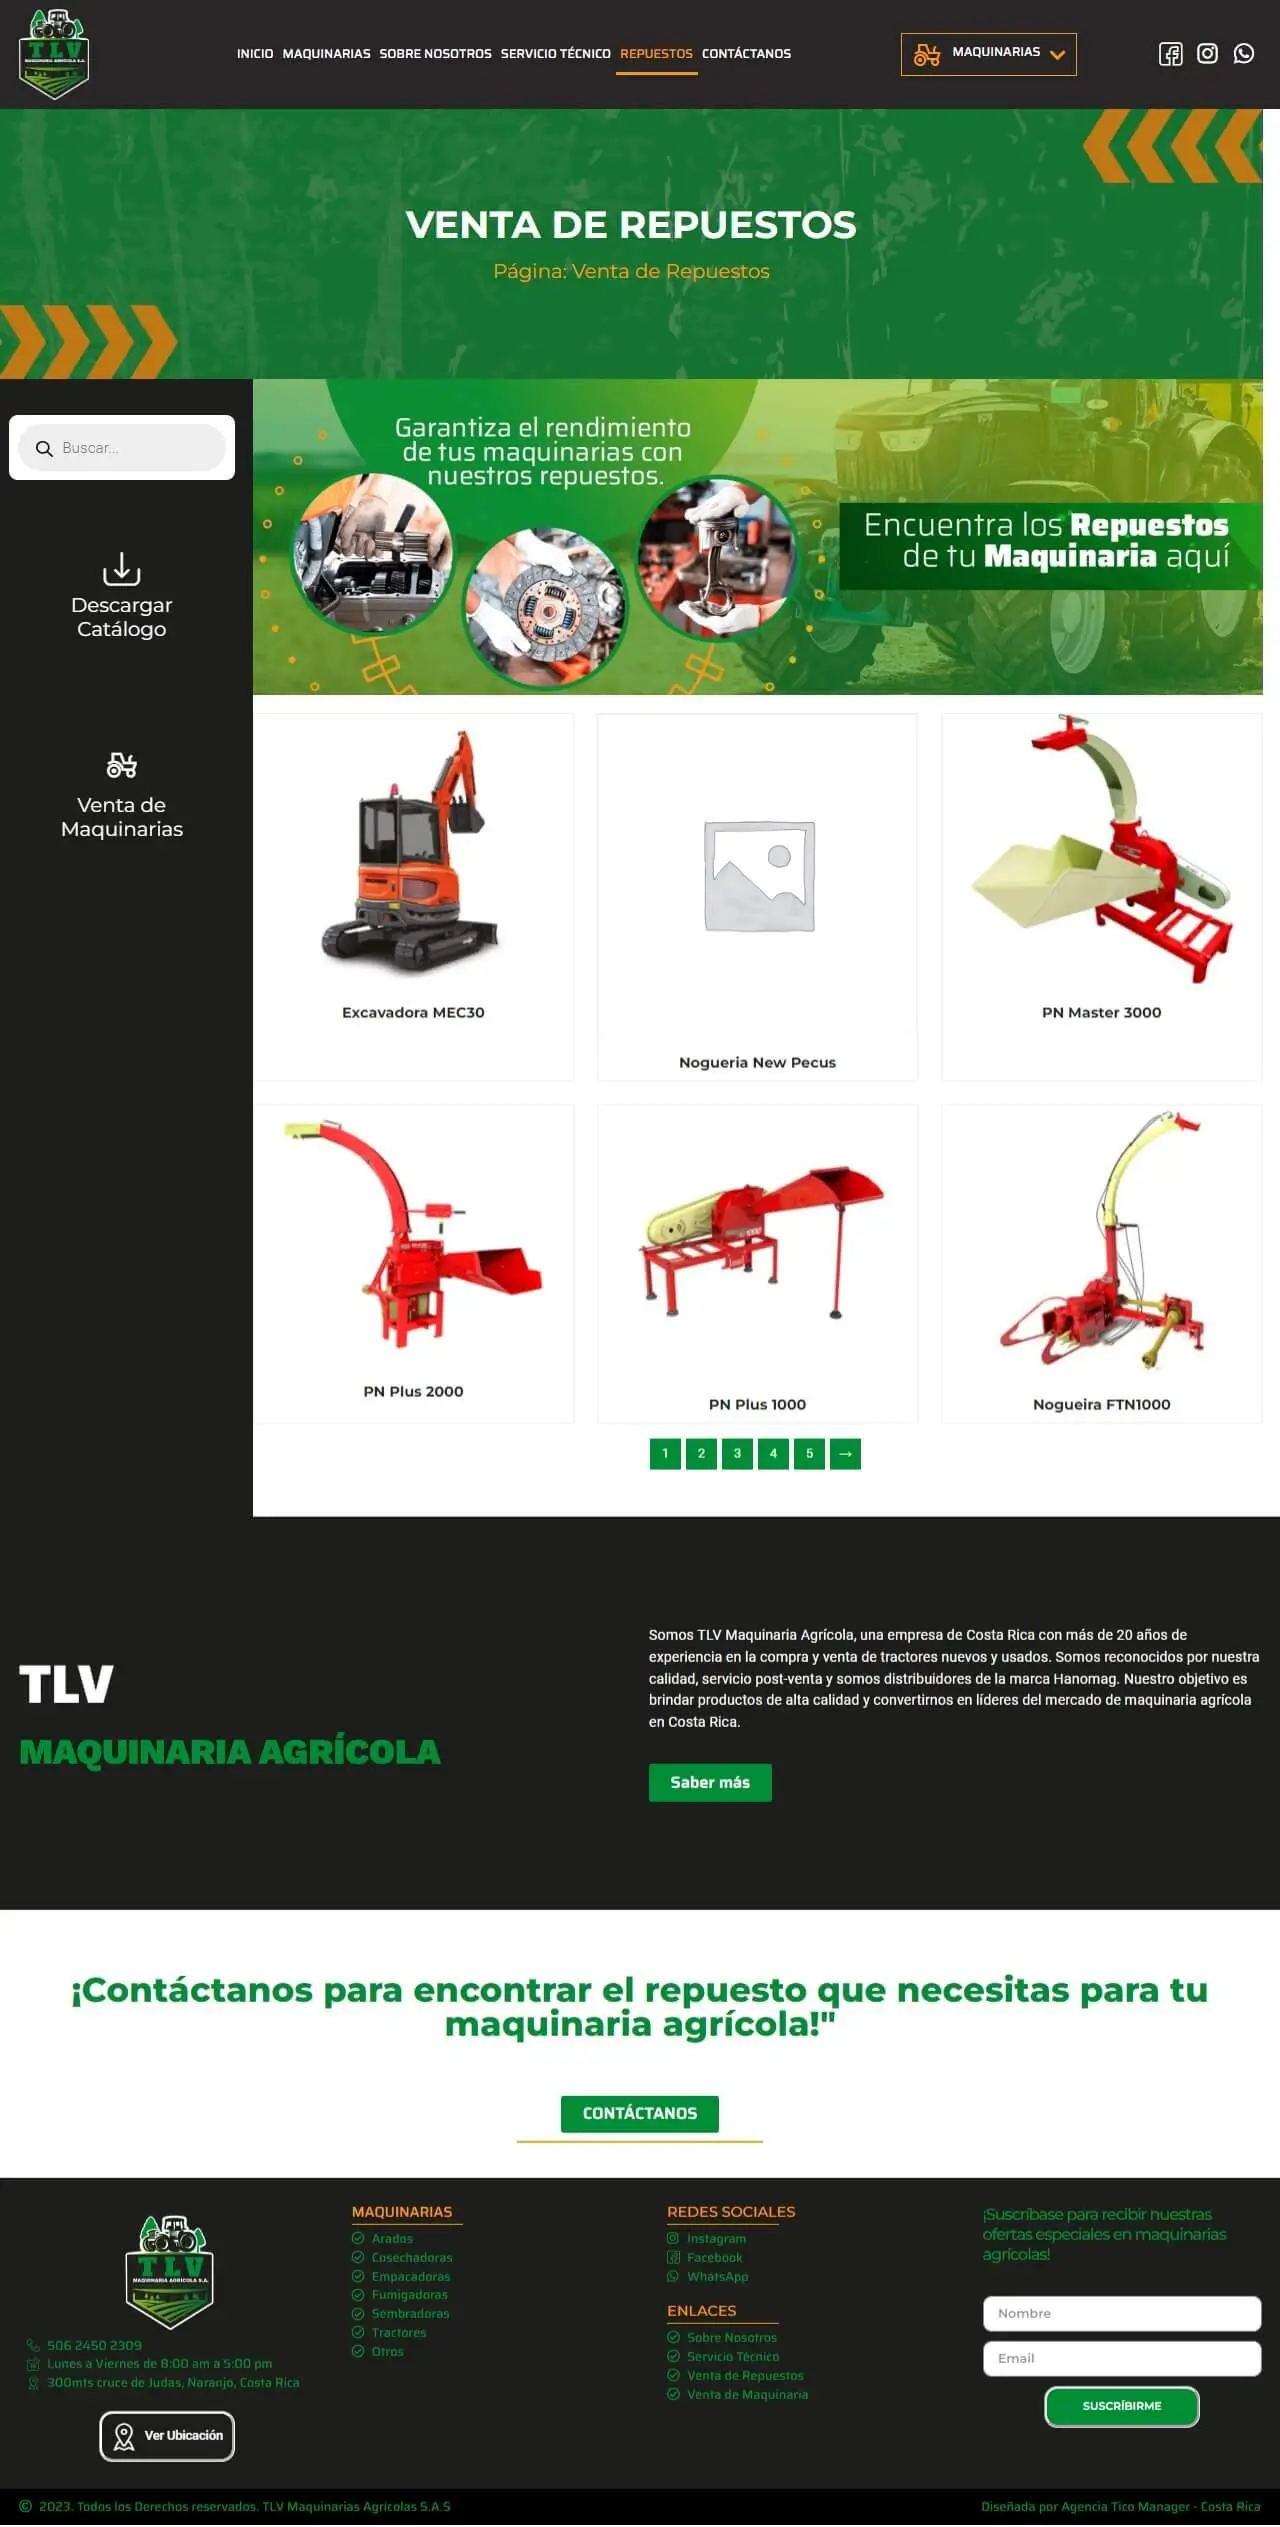  | Portafolio: Tienda Online – TLV Tractores